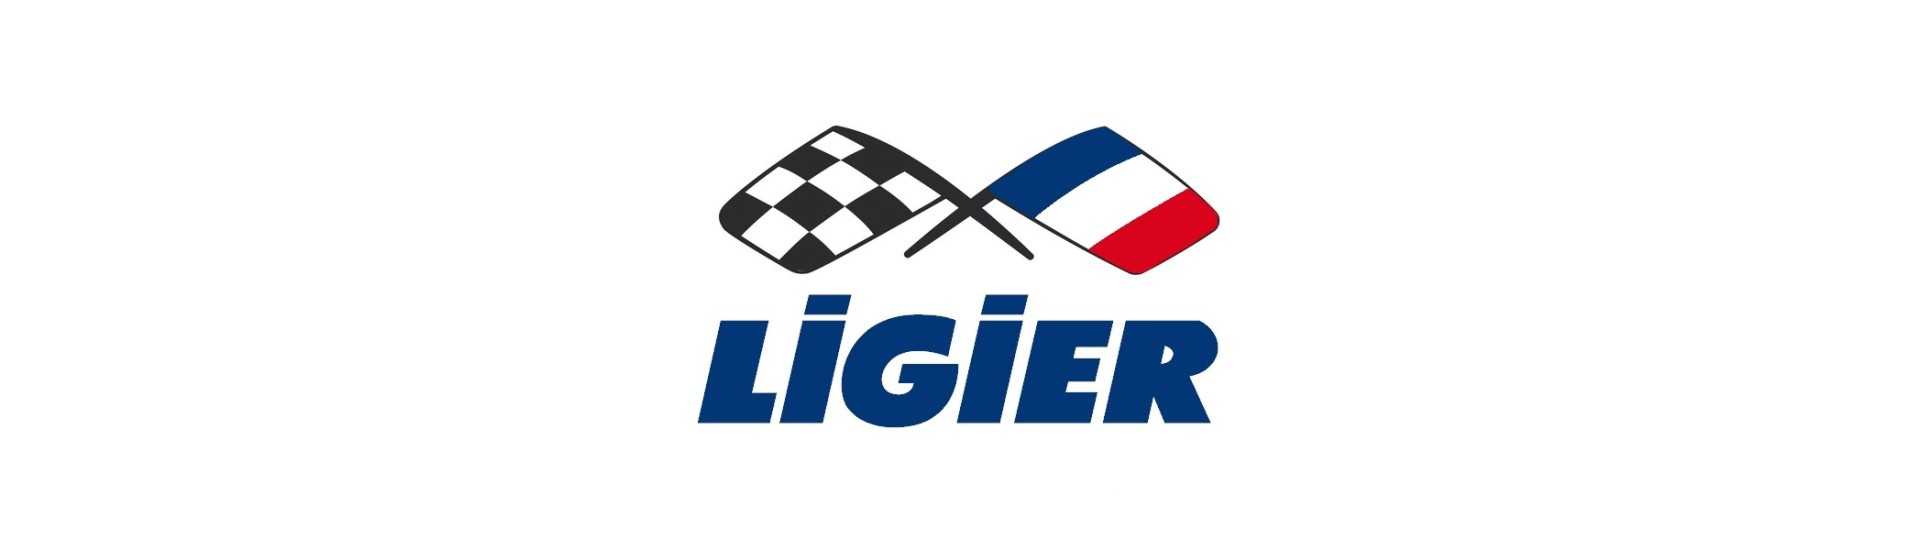 Tankbücher zum besten Preis für Auto ohne Lizenz Ligier